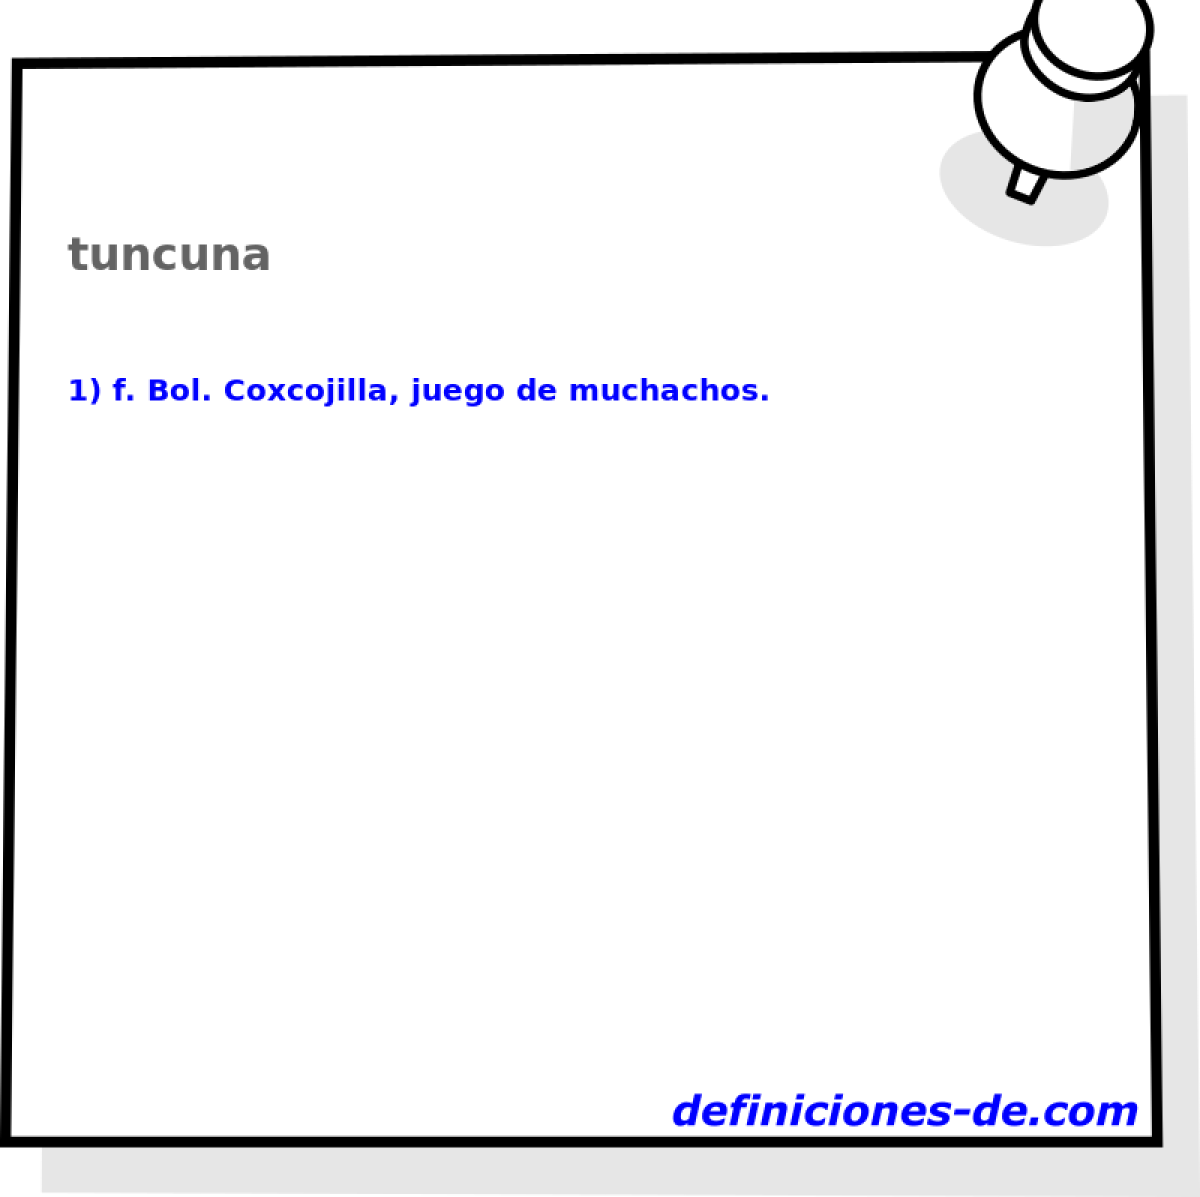 tuncuna 